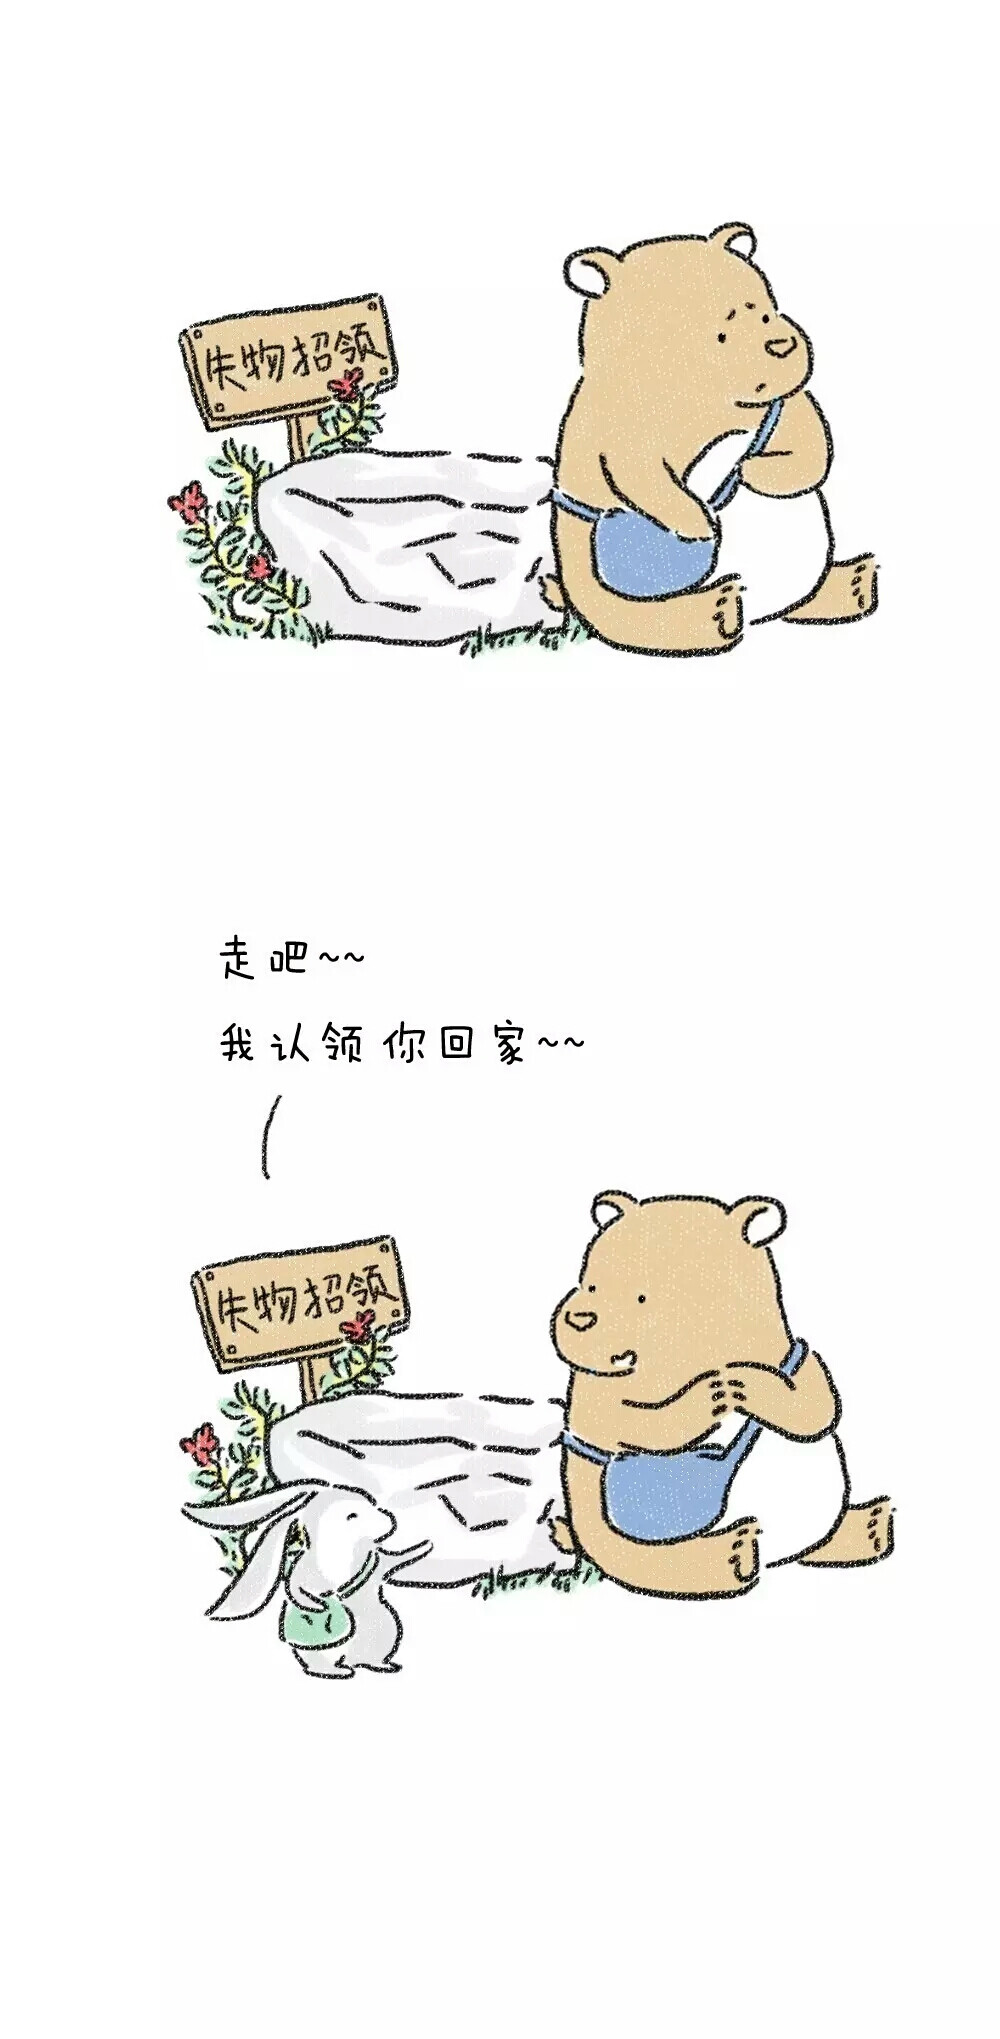 熊和兔子的爱情故事图片